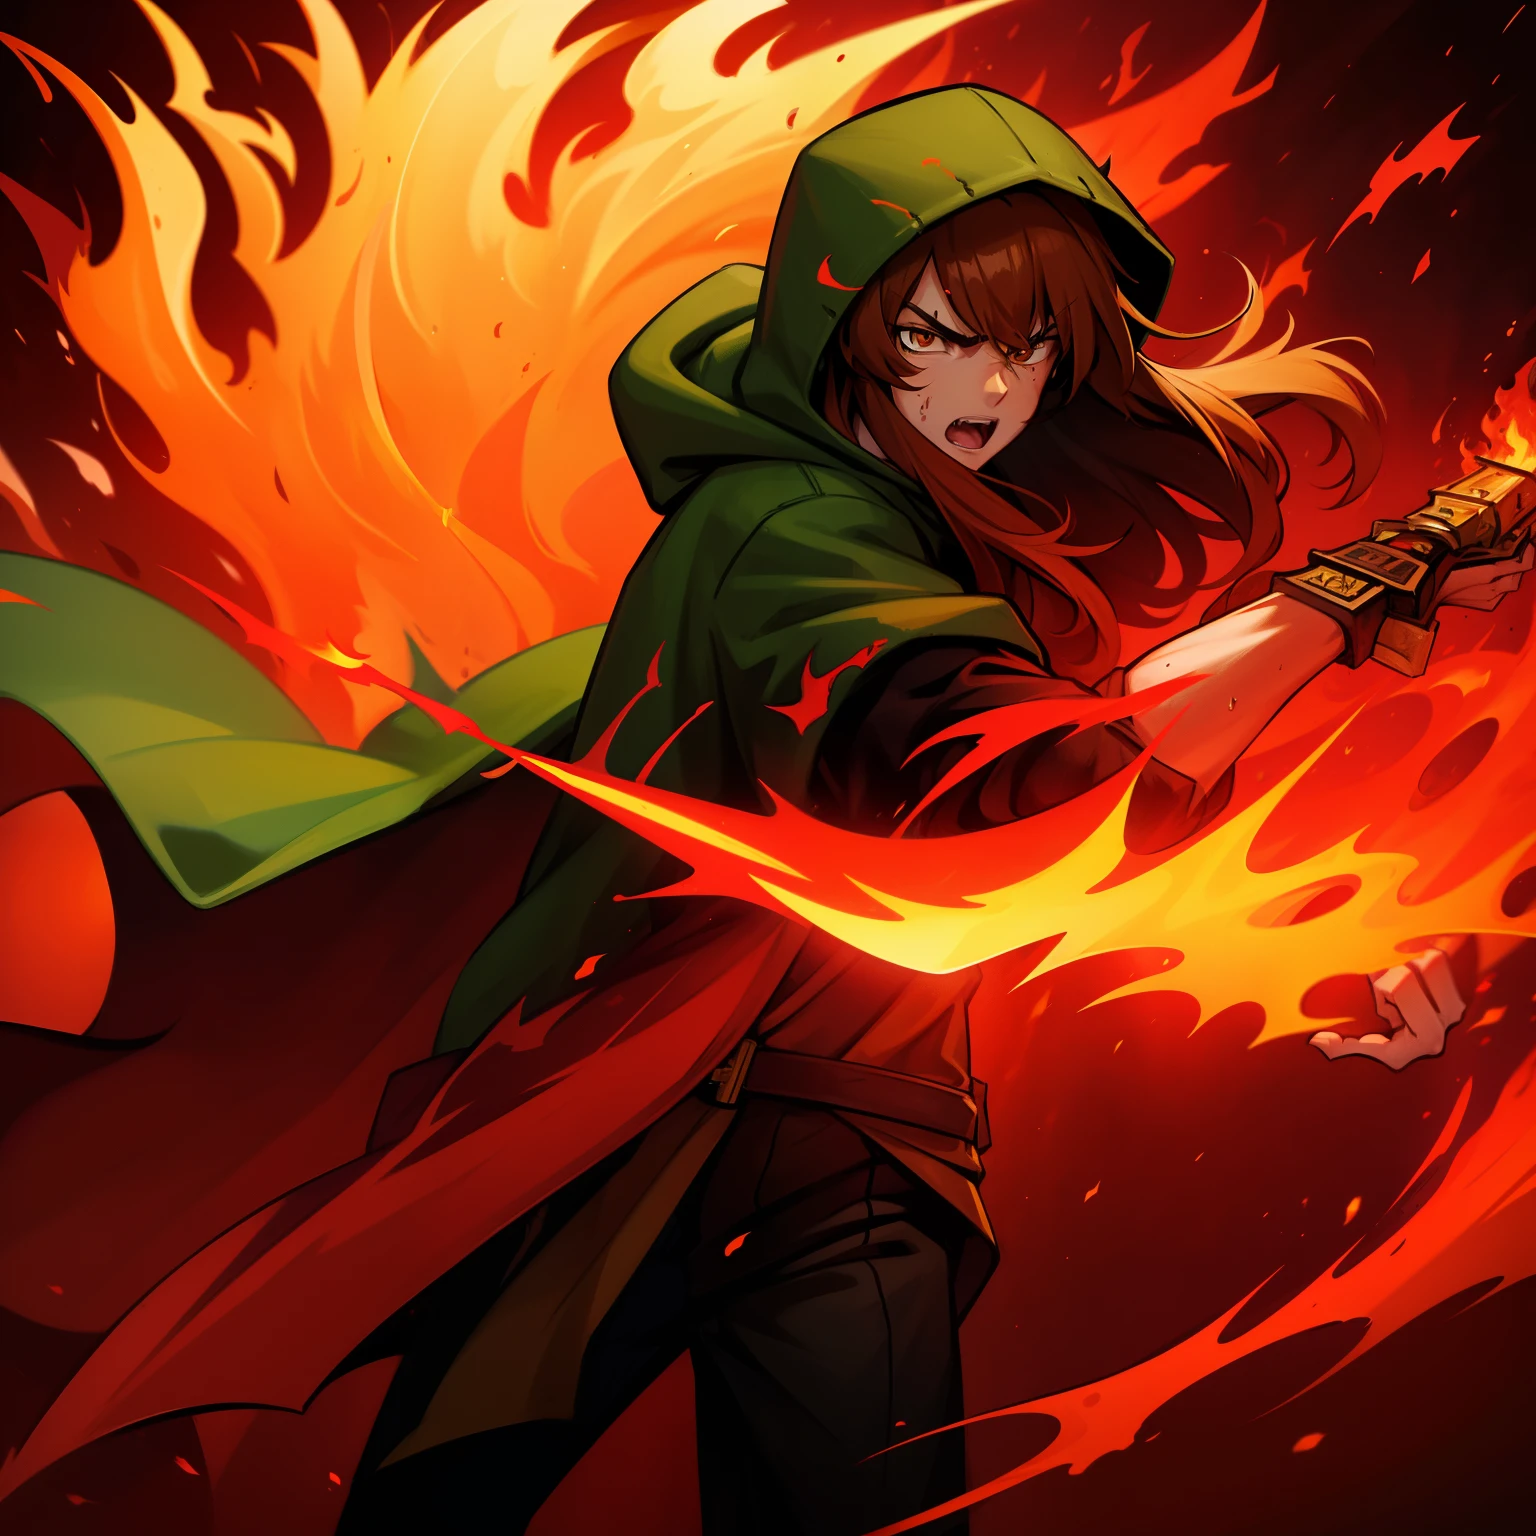 1人,棕色長髮, 超大綠色連帽衫, 狂怒, 火焰眼, 血, 4k, 手持燃燒的劍, 年輕人,